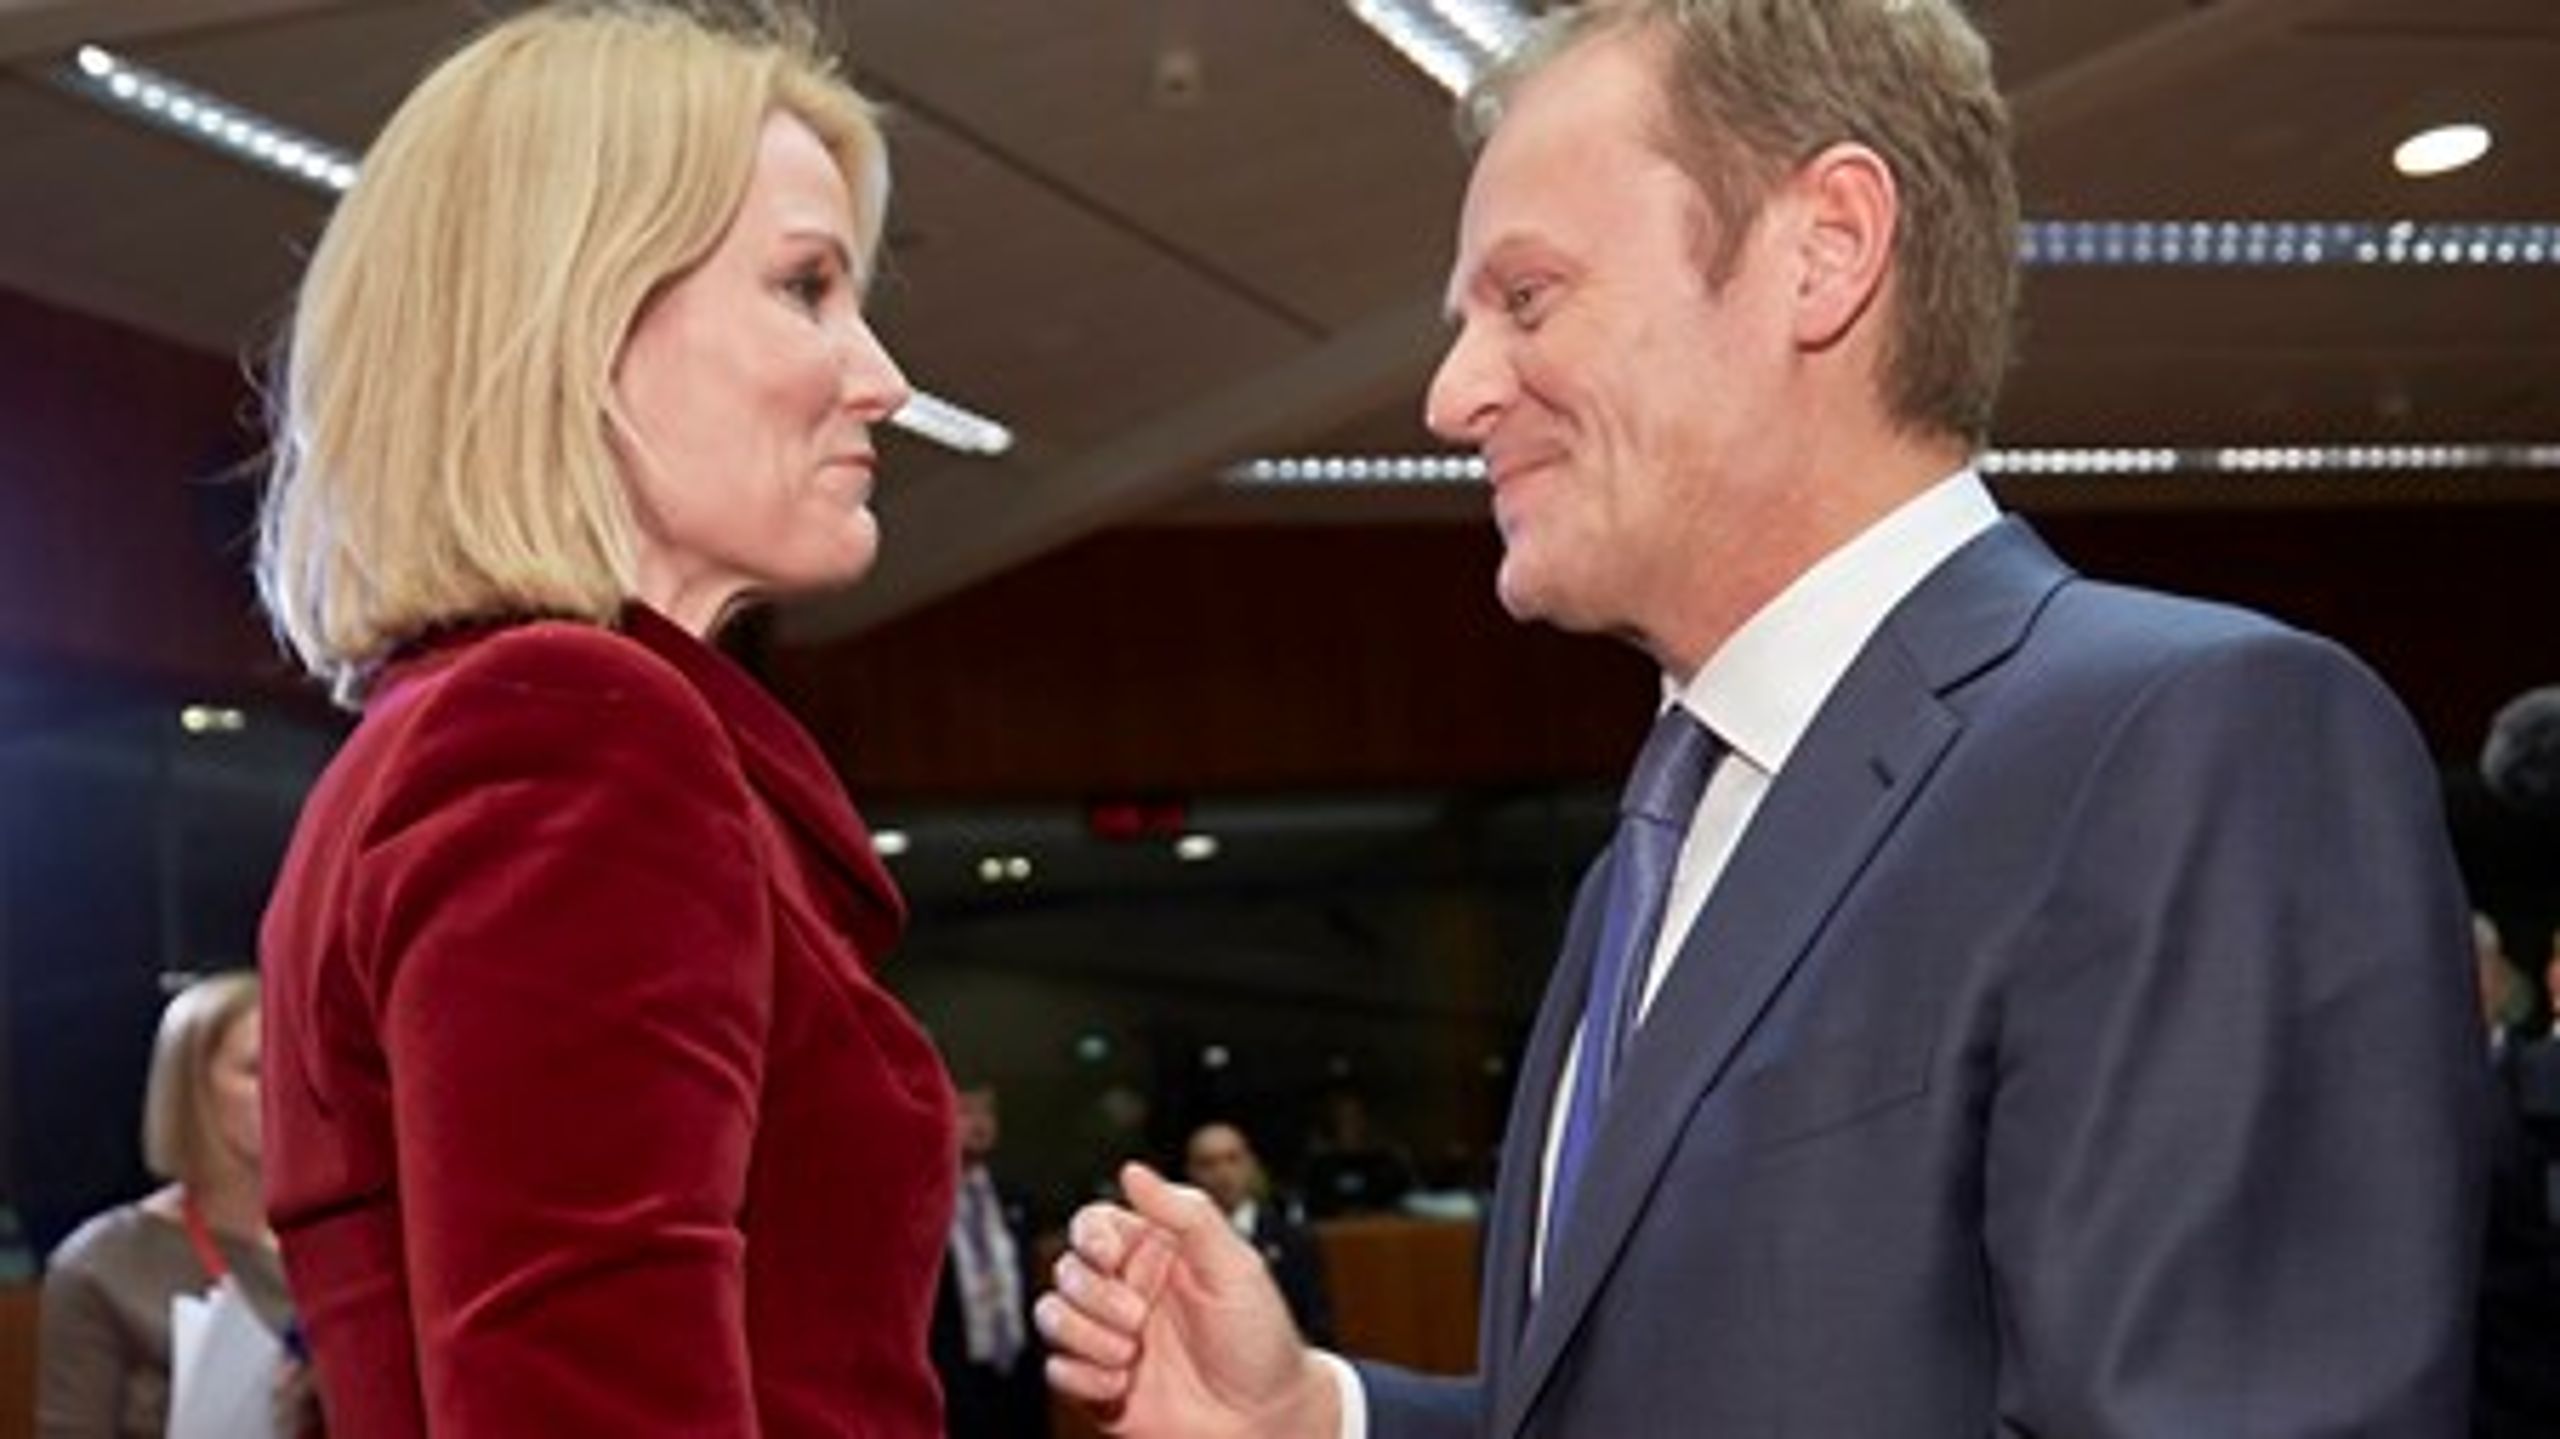 Statsminister Helle Thorning-Schmidt (S) har sendt et brev til den&nbsp;nye formand for Det Europæiske Råd, Donald Tusk, hvor hun understreger vigtigheden af, at EU's nye investeringsfond koncentrerer sig om grønne tiltag.